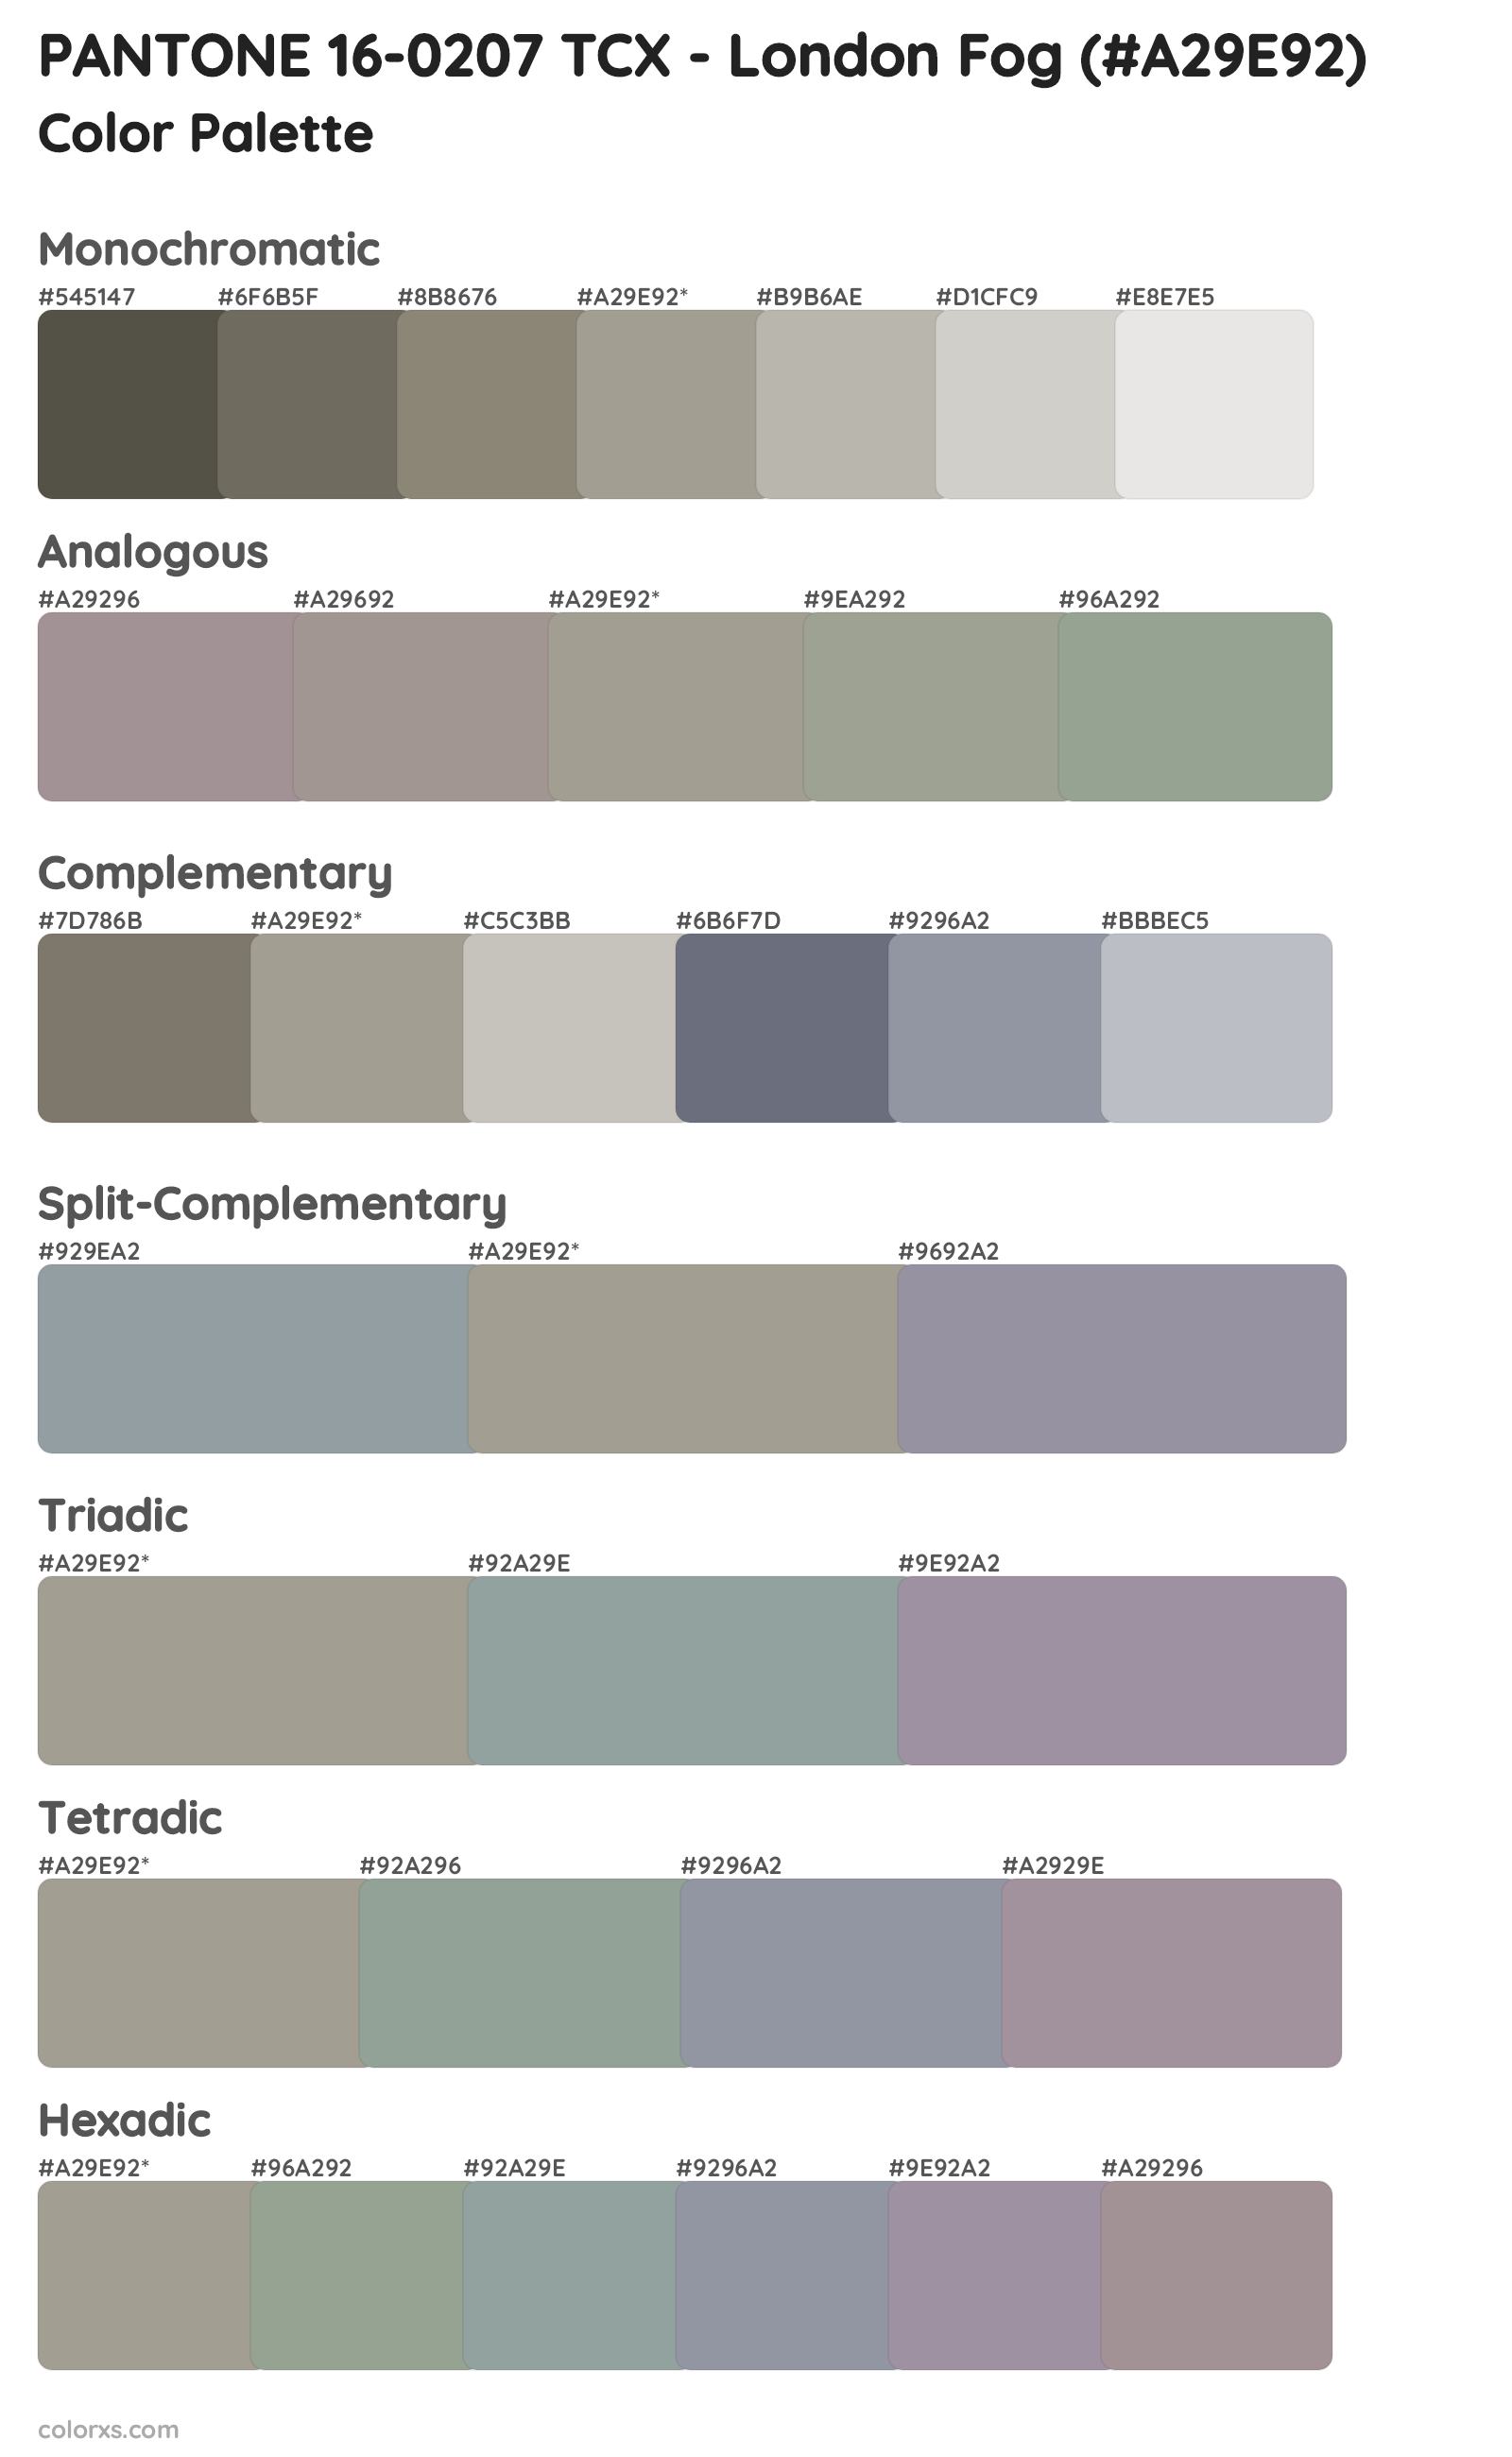 PANTONE 16-0207 TCX - London Fog Color Scheme Palettes